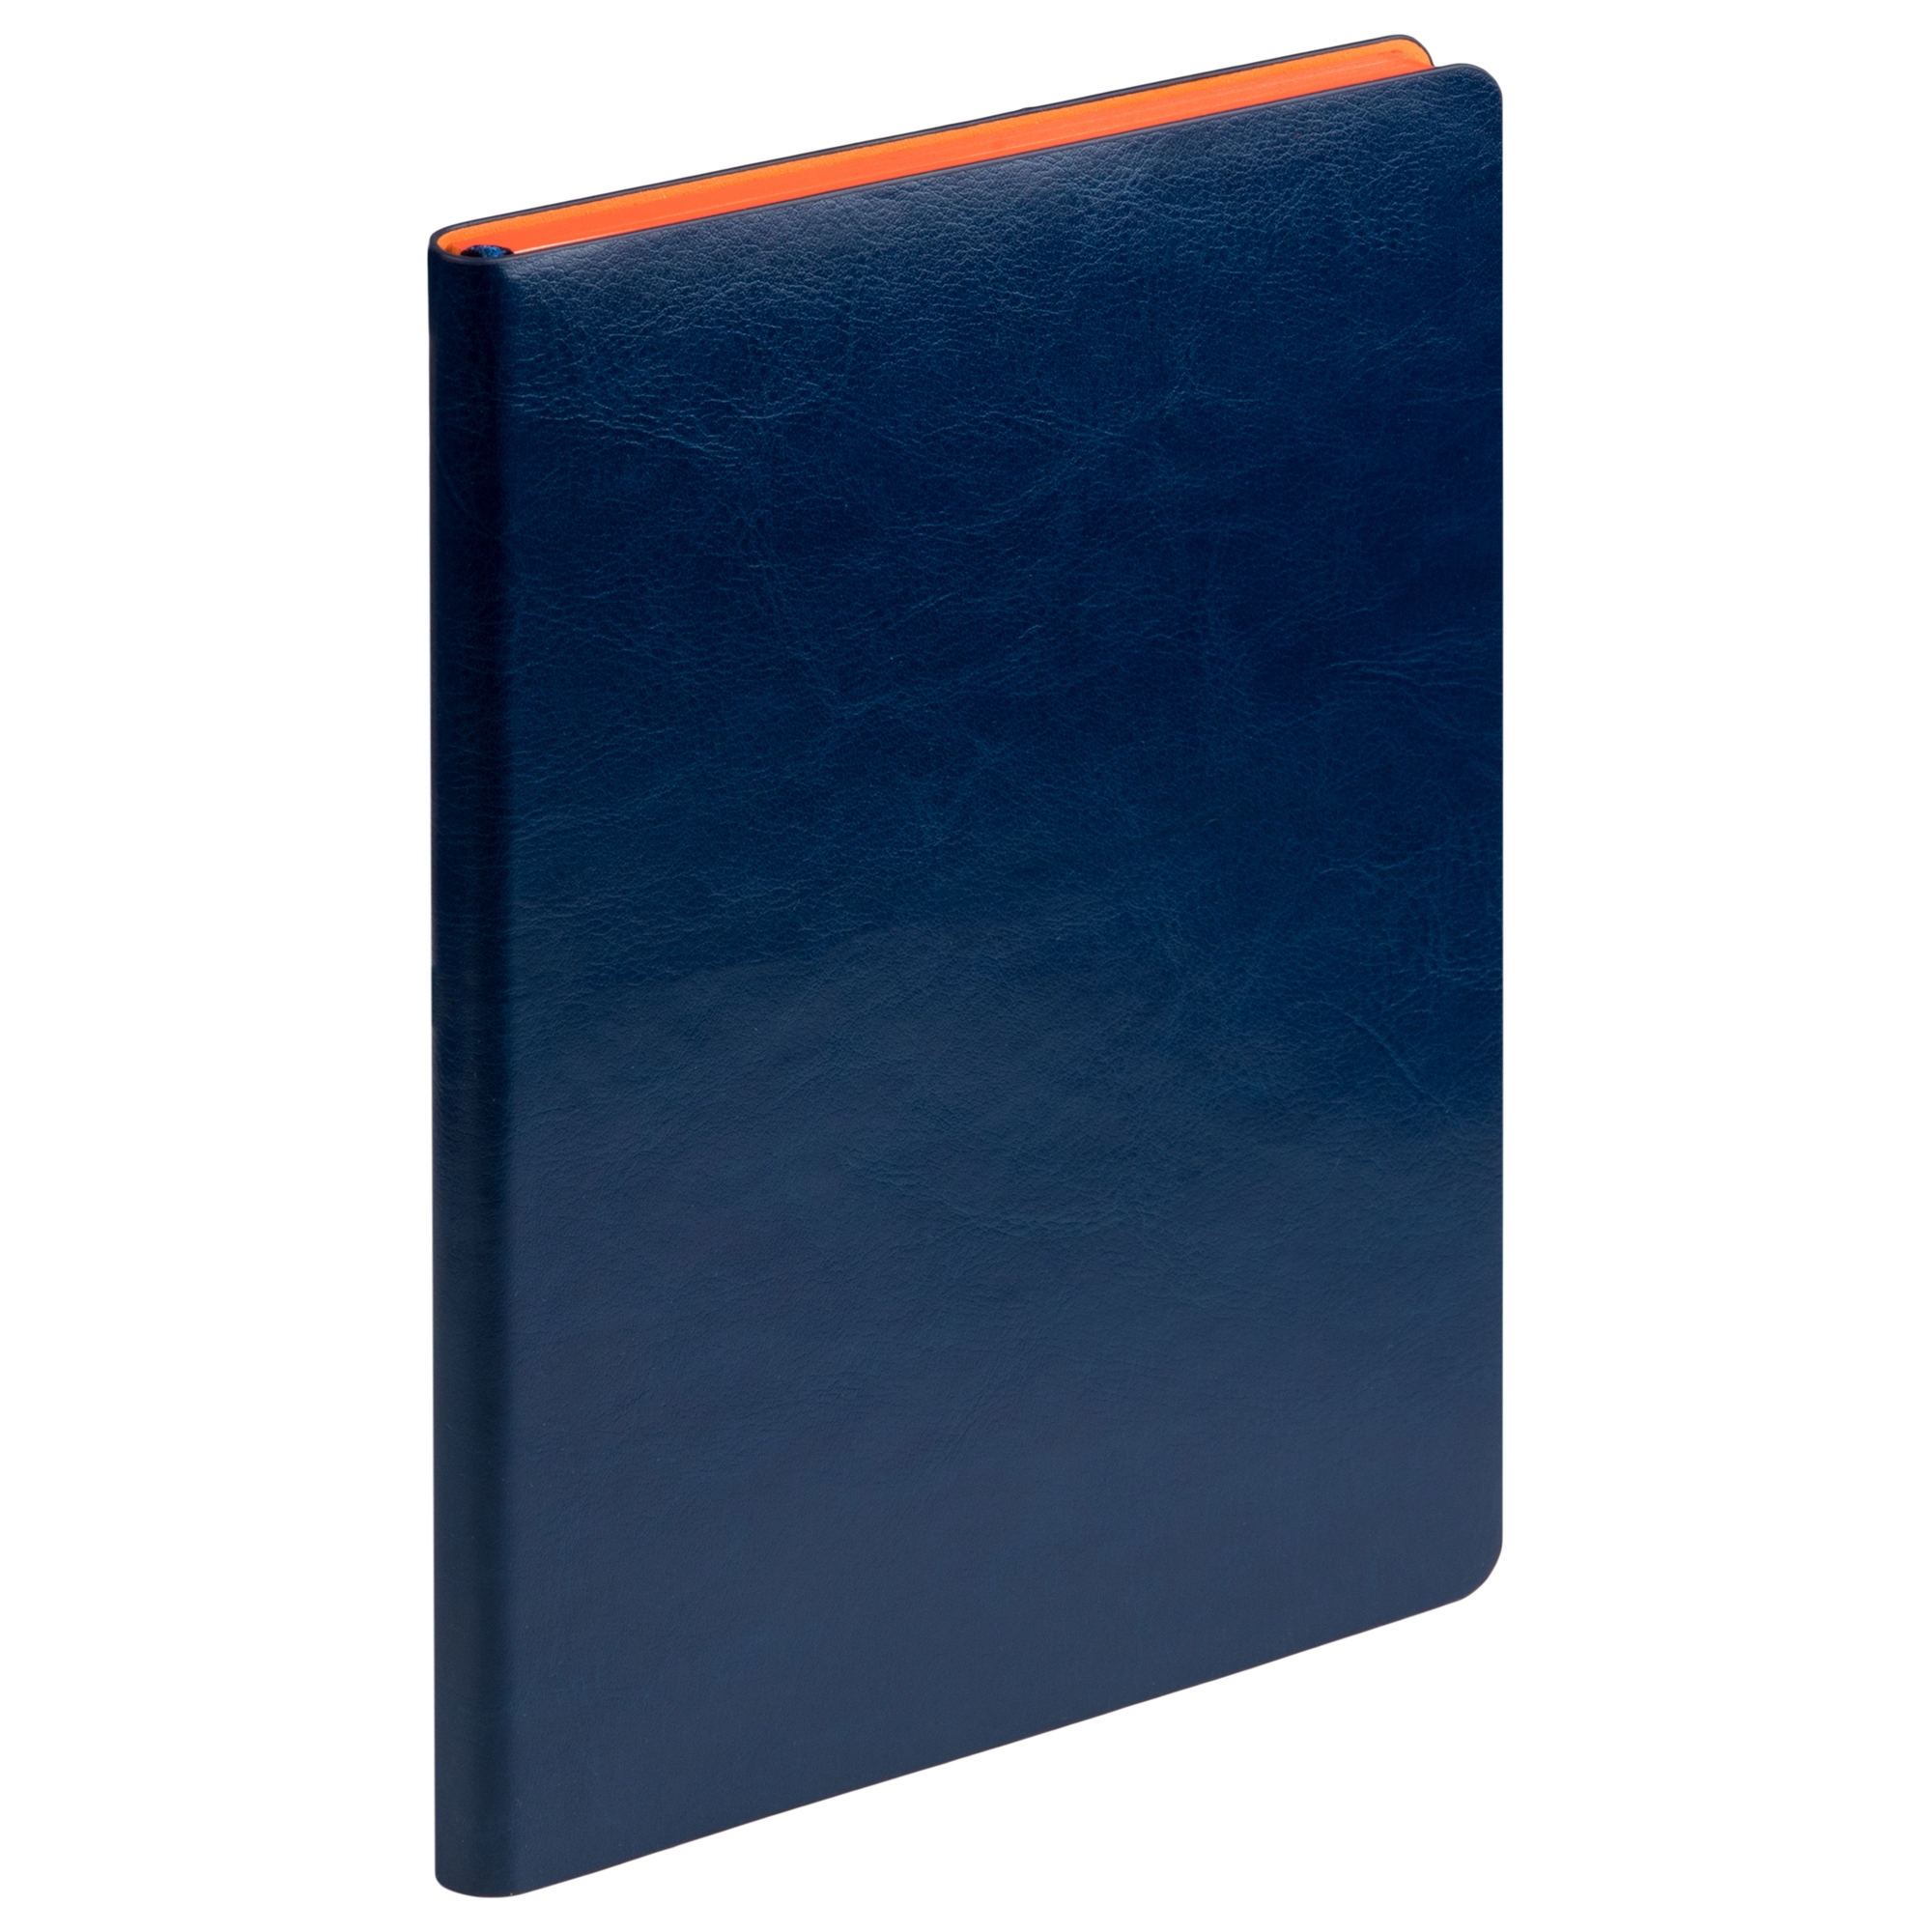 Ежедневник River side недатированный, синий/оранжевый (без упаковки, без стикера), синий